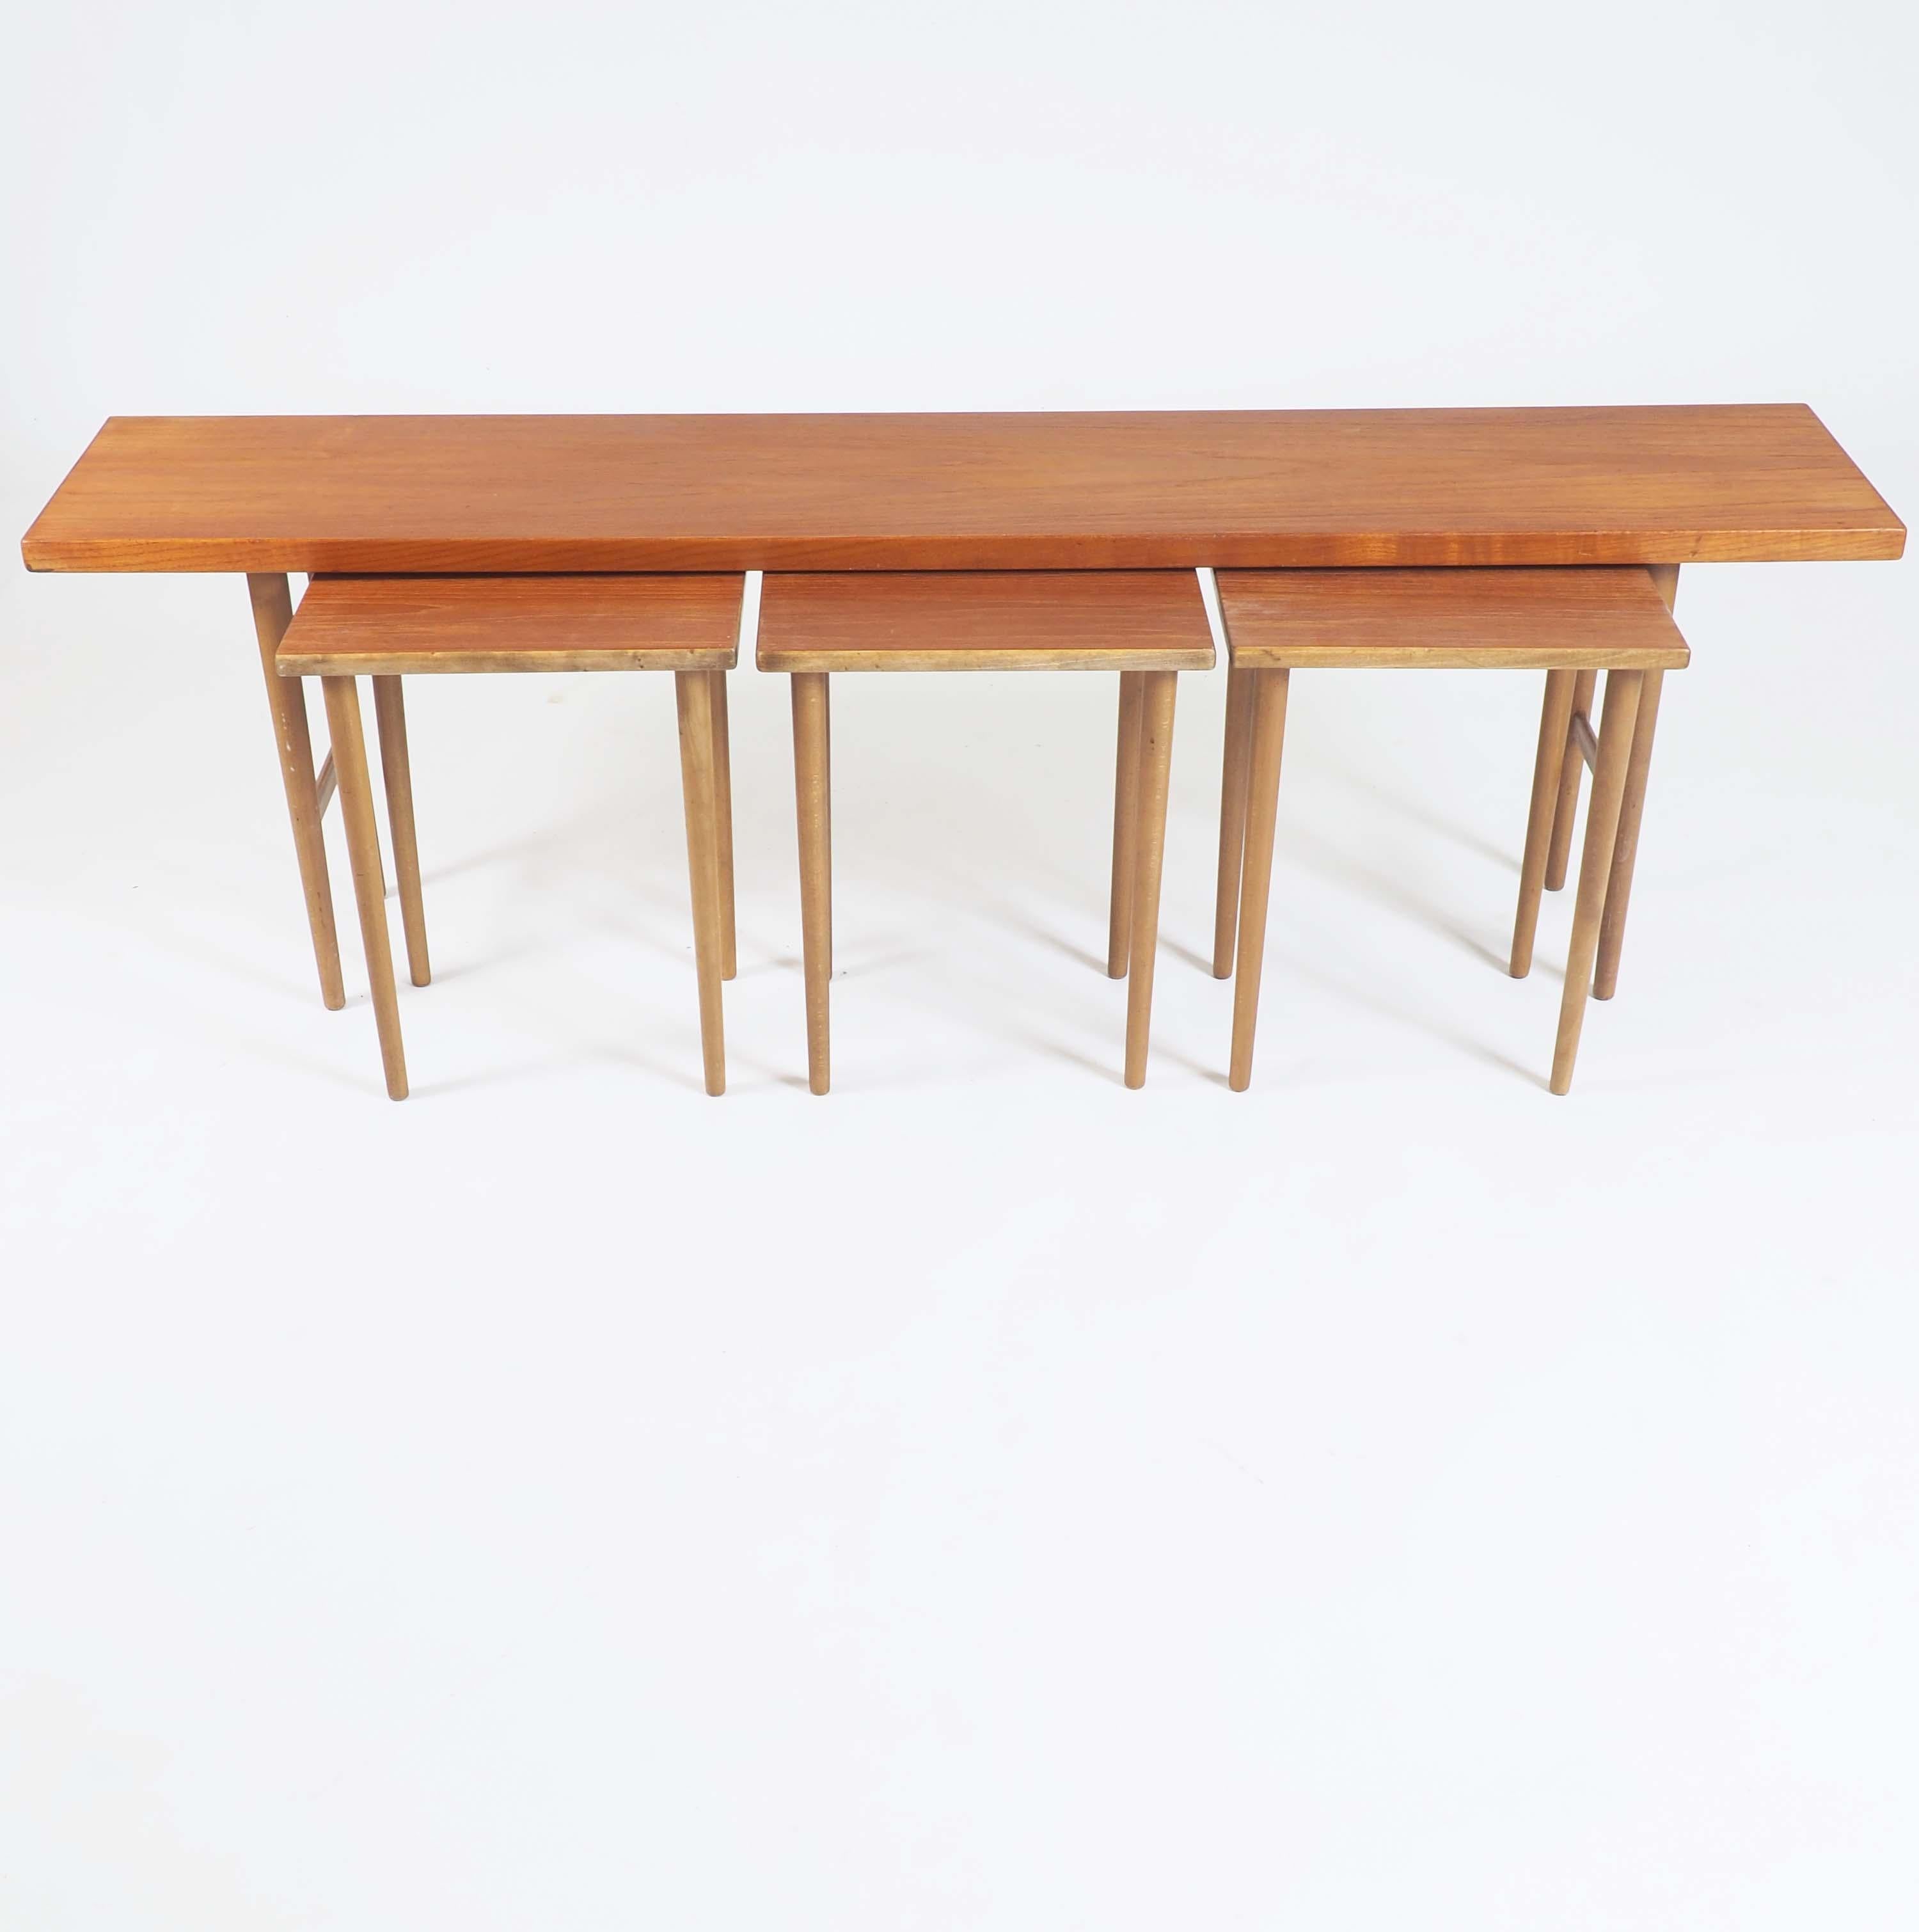 Danish Nesting Tables in Teak Designed by Kurt Østervig for Jason, Denmark